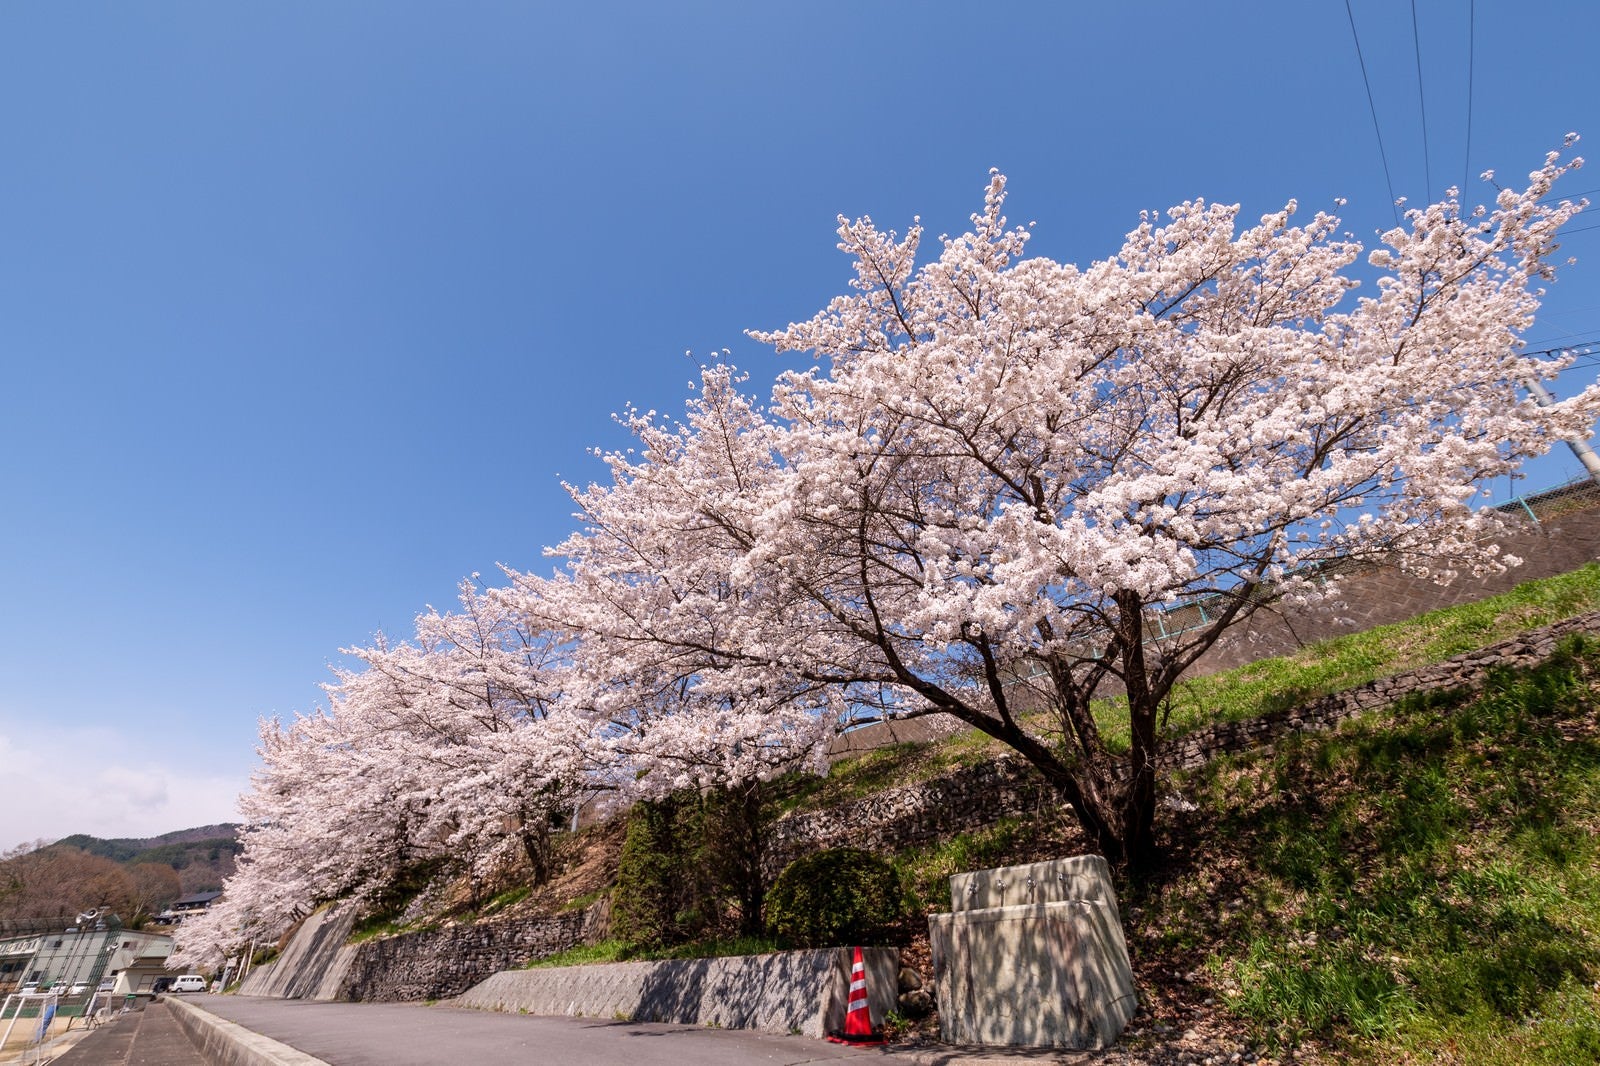 「武石グラウンドの道路沿いに咲く桜」の写真